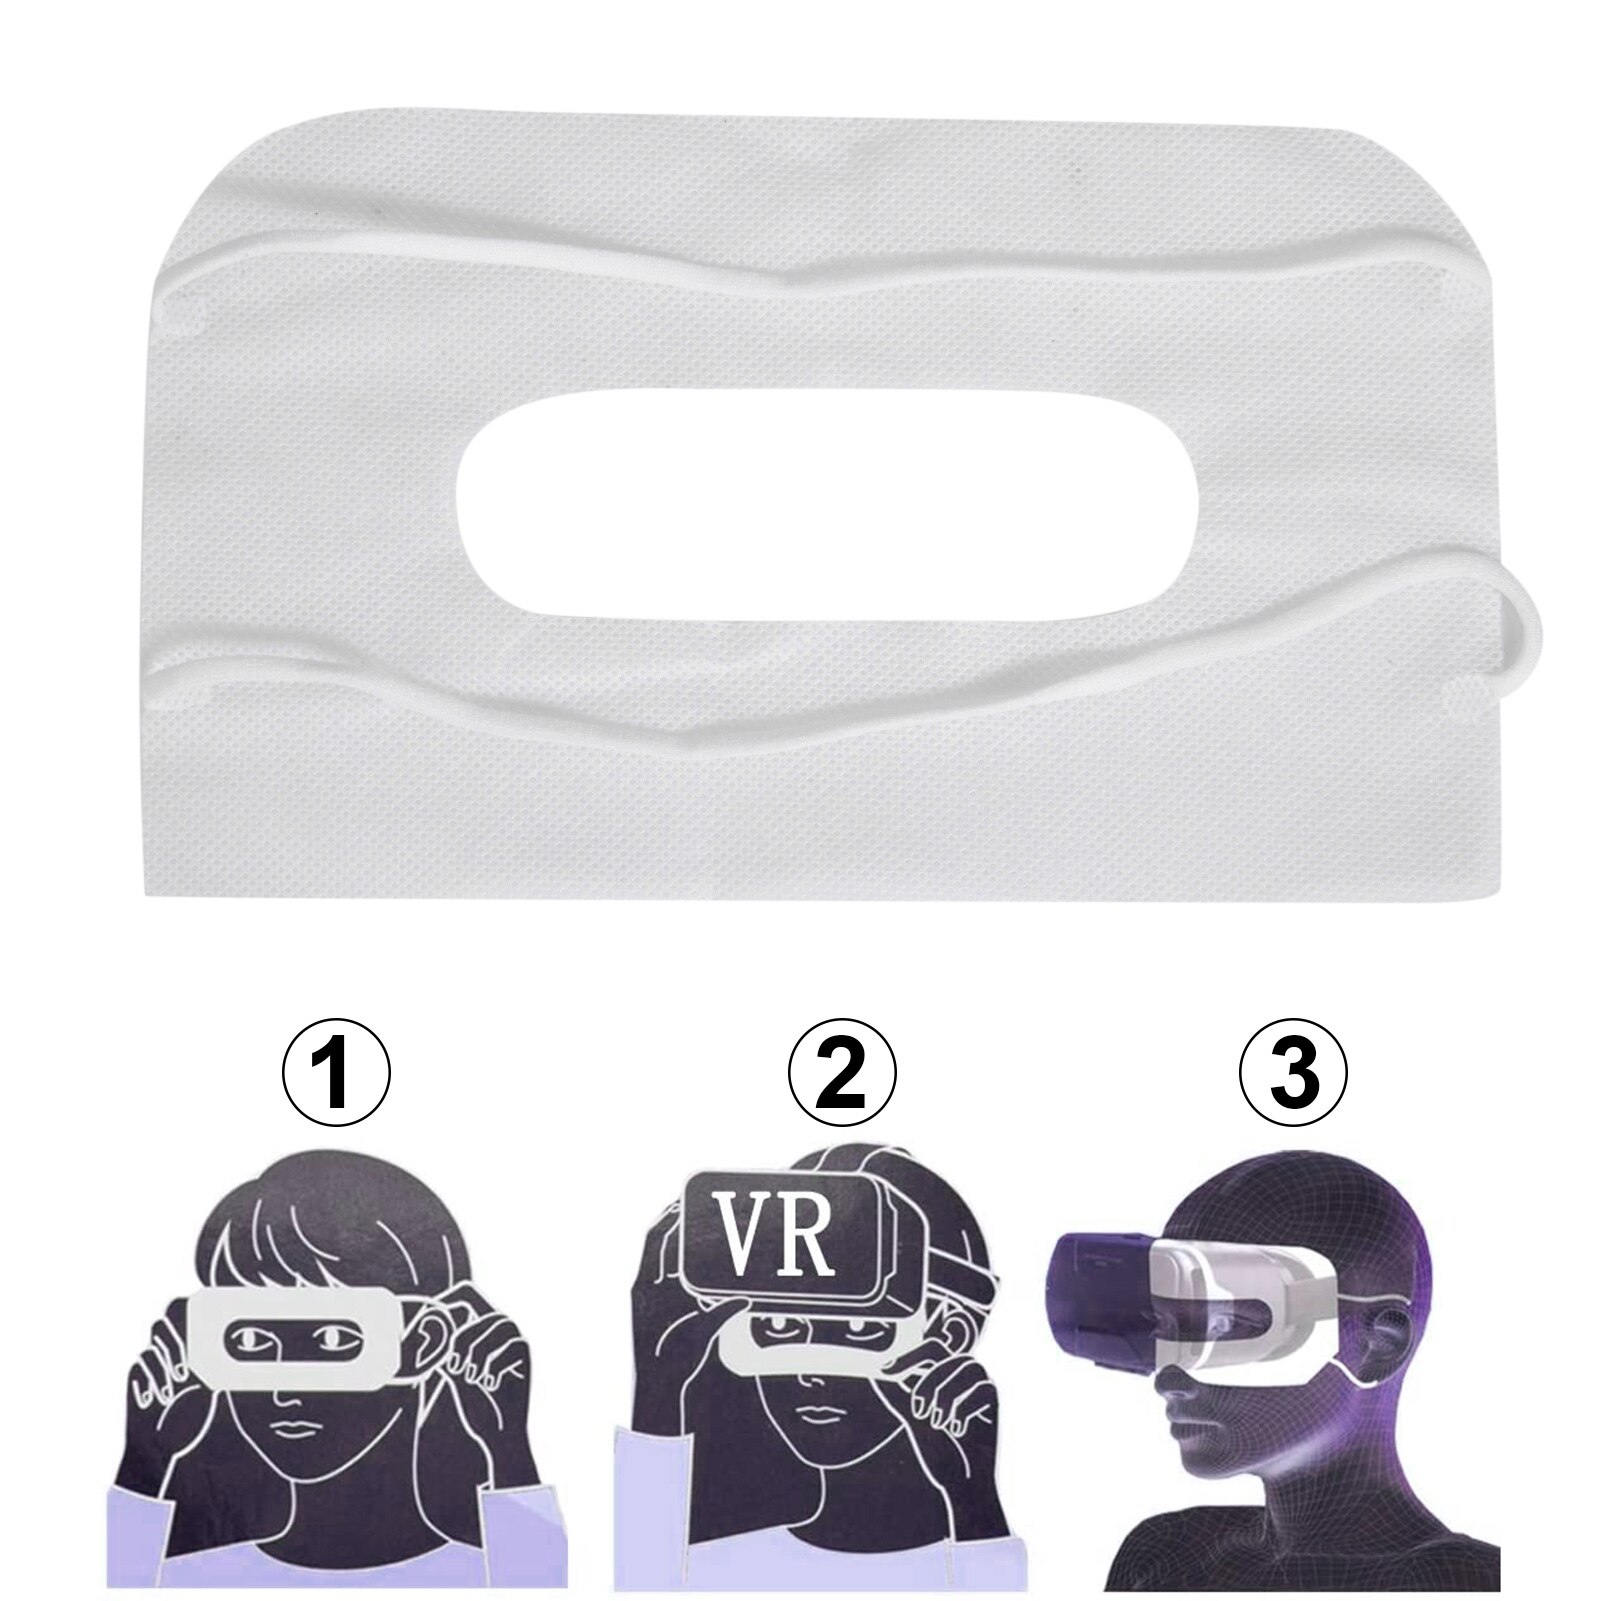 100 Stks/set Vr Wegwerp Eye Pad Gezicht Cover Masker Niet-geweven Sanitaire Masker Voor Infecties Preventie Voor Oculus quest 2 Vr